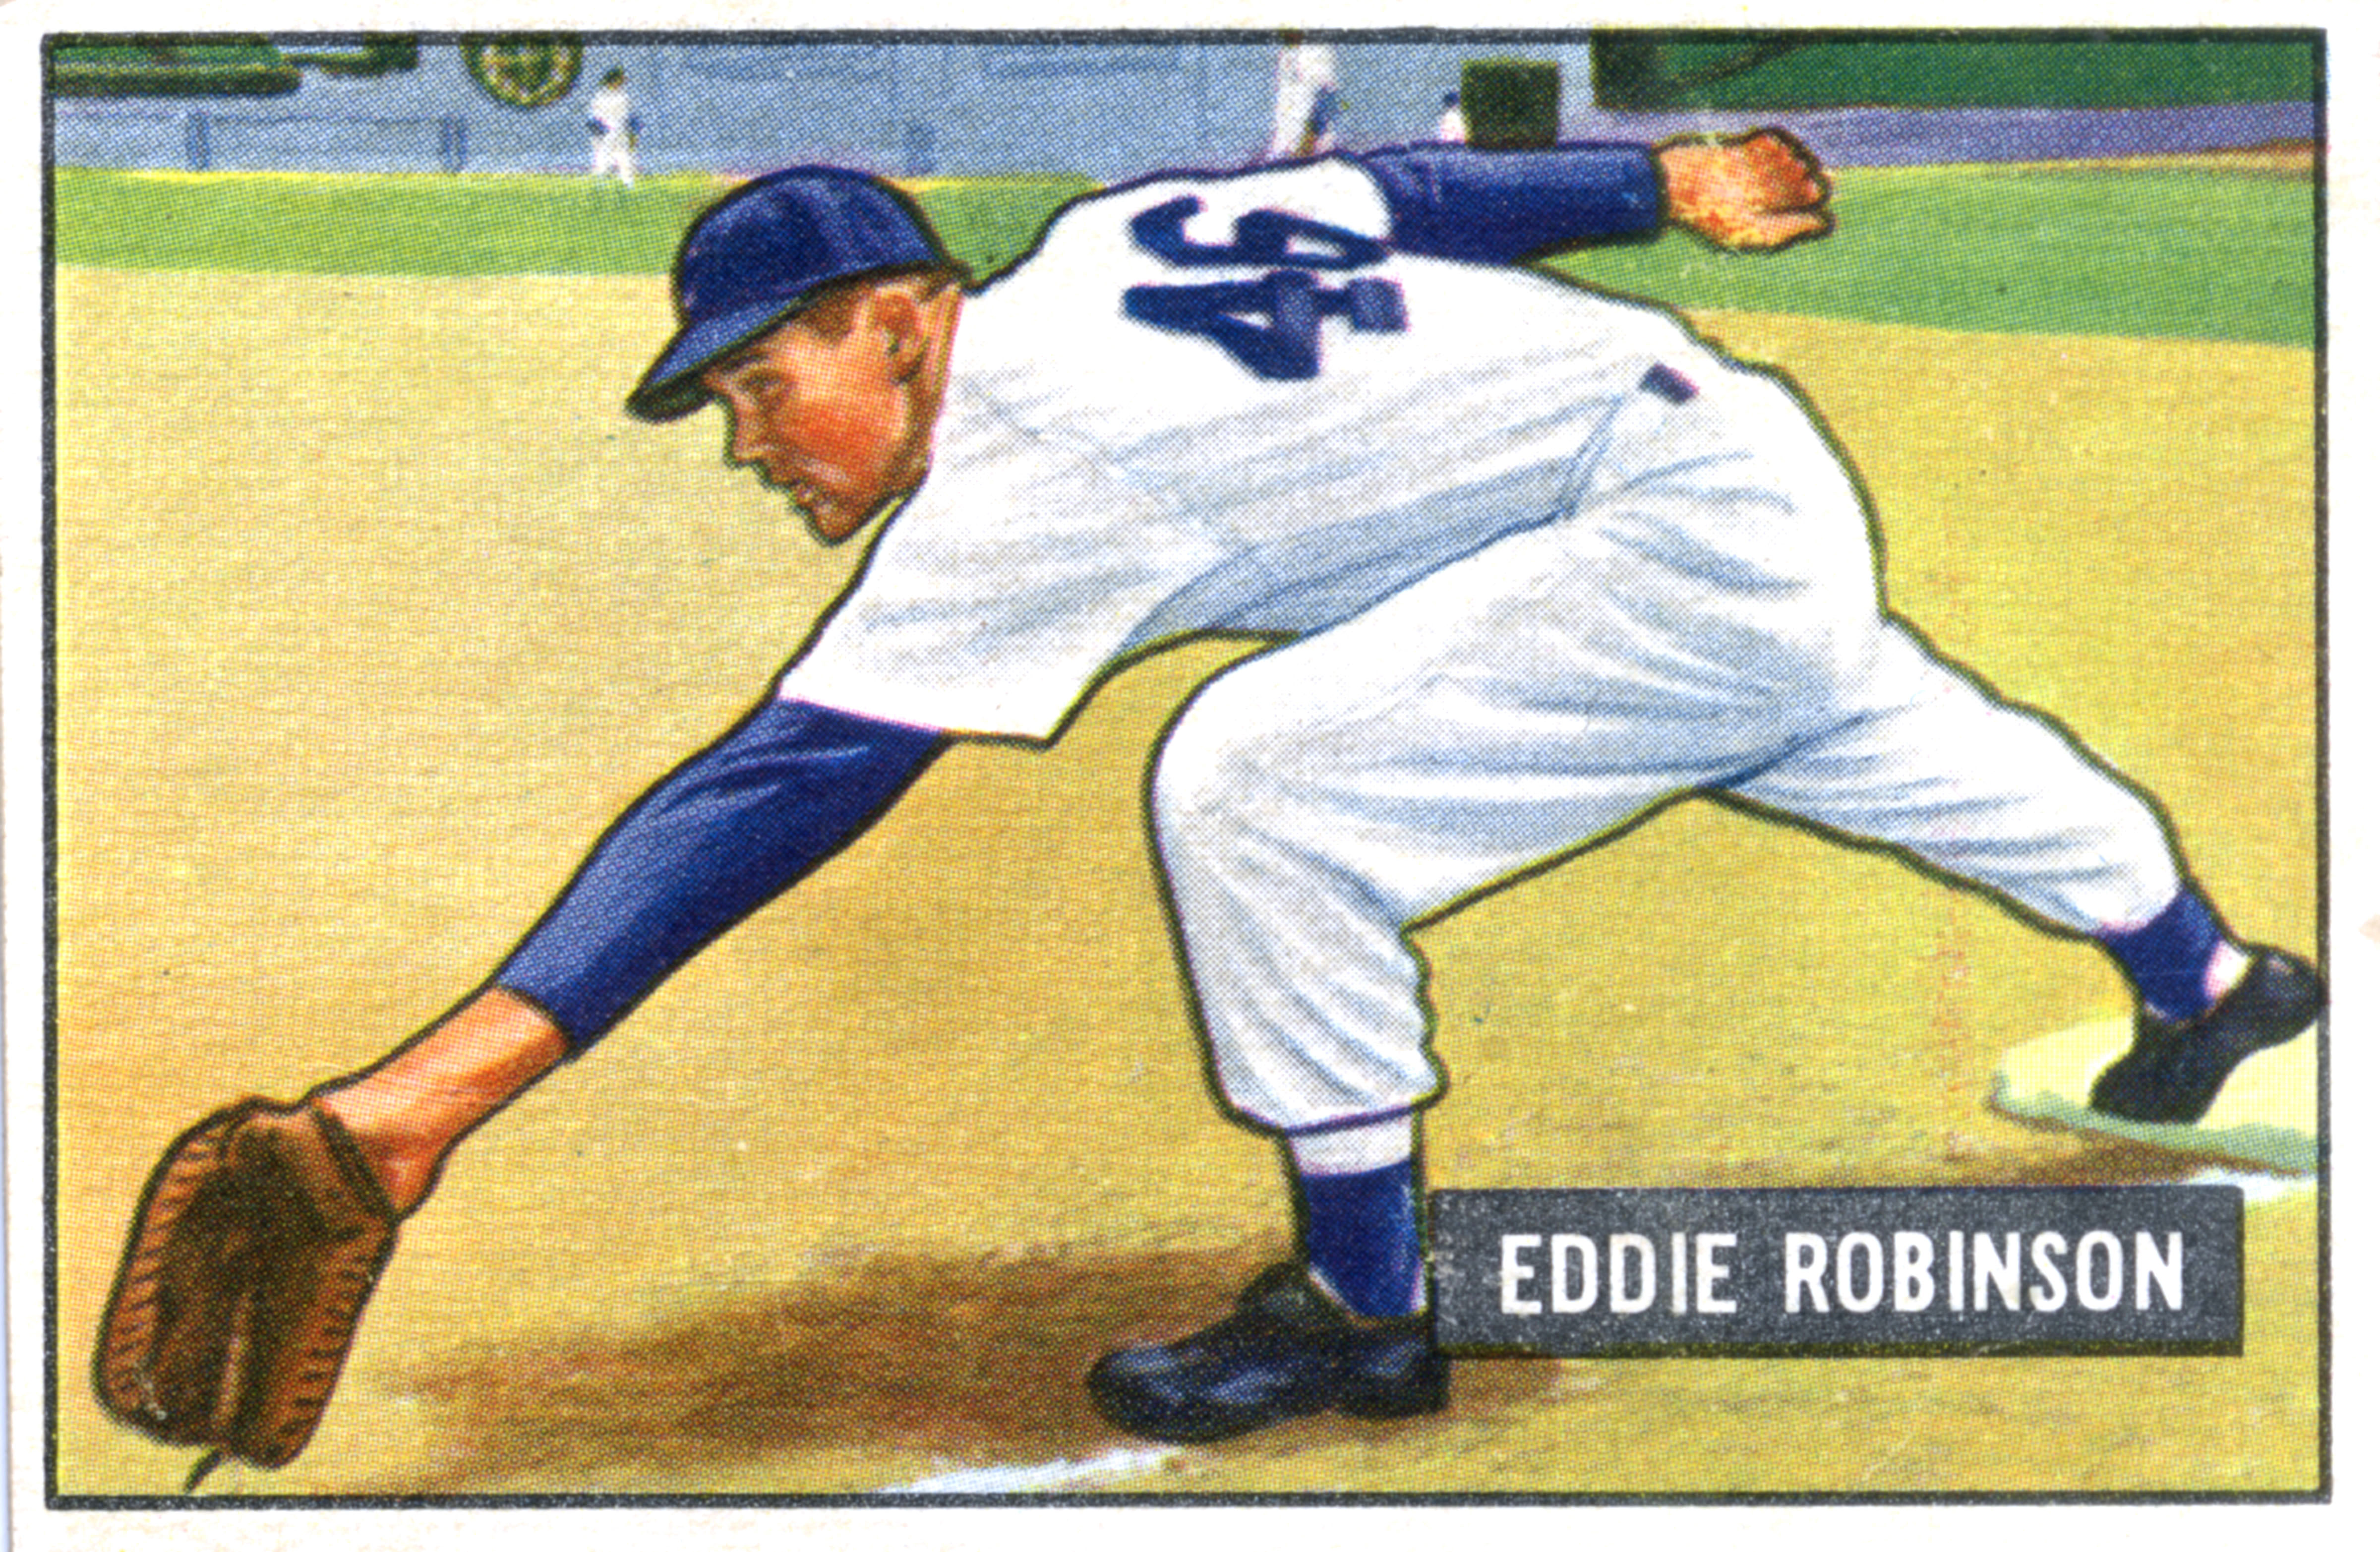 Baseball Card Of Eddie Robinson